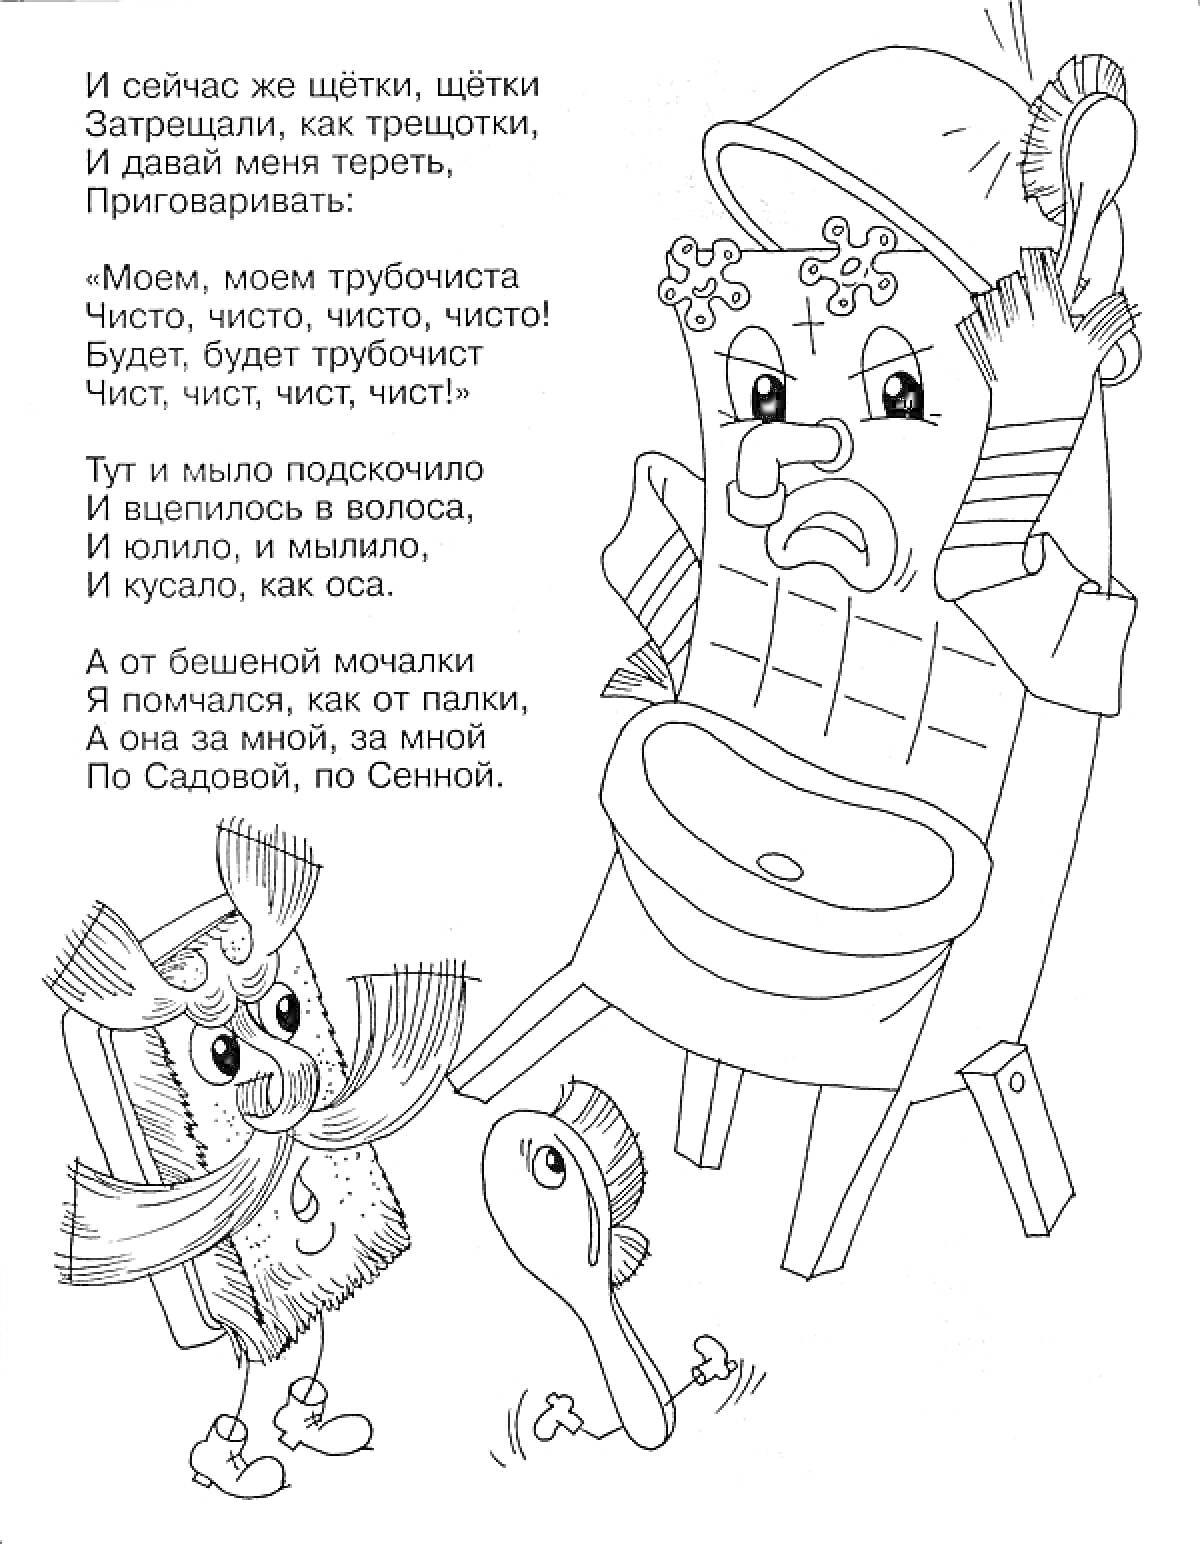 Мойдодыр, умывальник в шапке, щетка с руками и ногами, зубная щетка, ножка стула и текст стихотворения